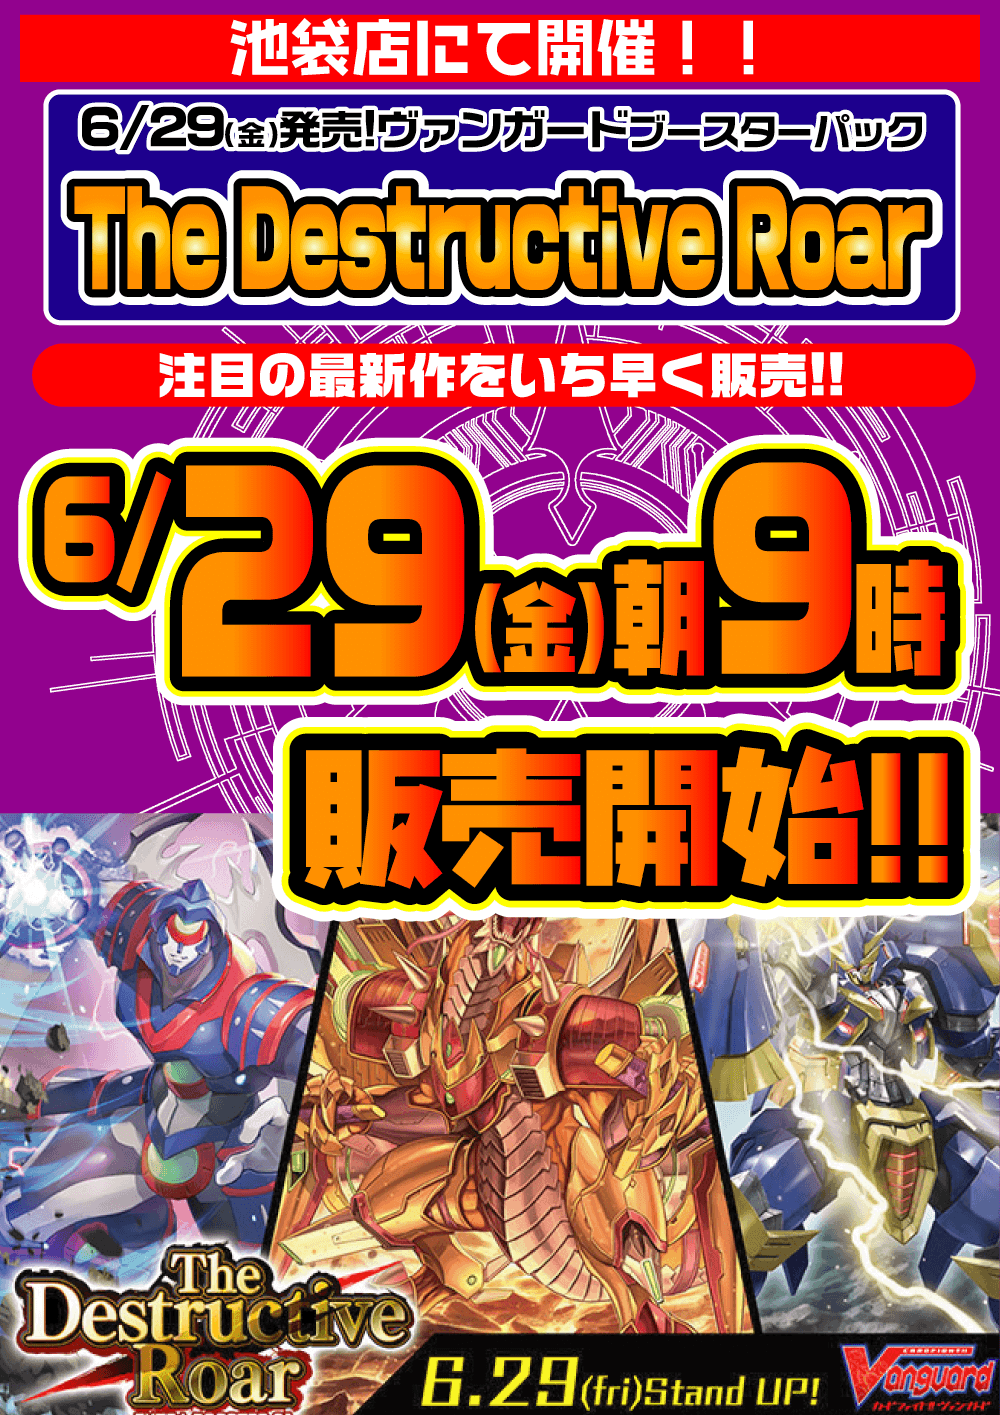 ヴァンガード「The Destructive Roar」早朝販売